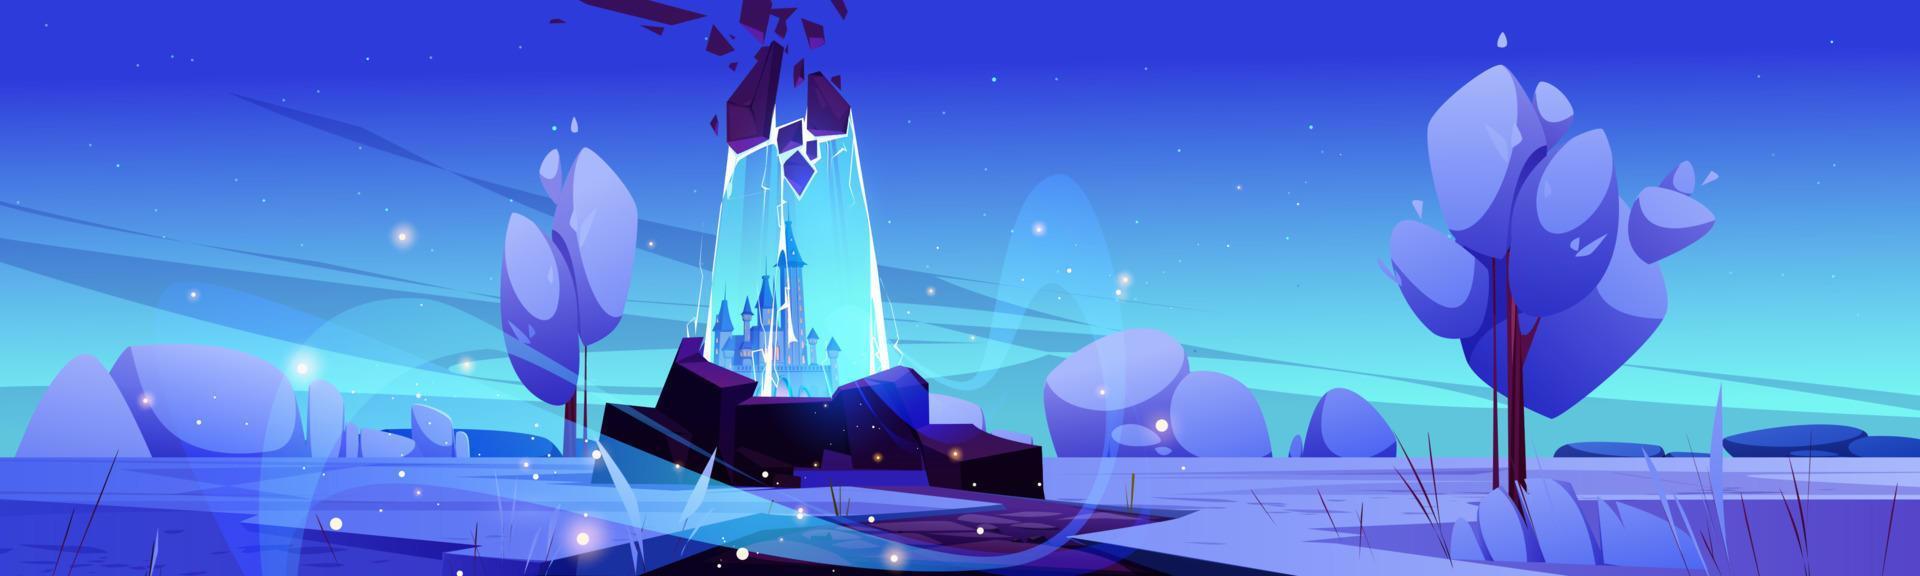 Magic portal at winter landscape, fairy tale scene vector